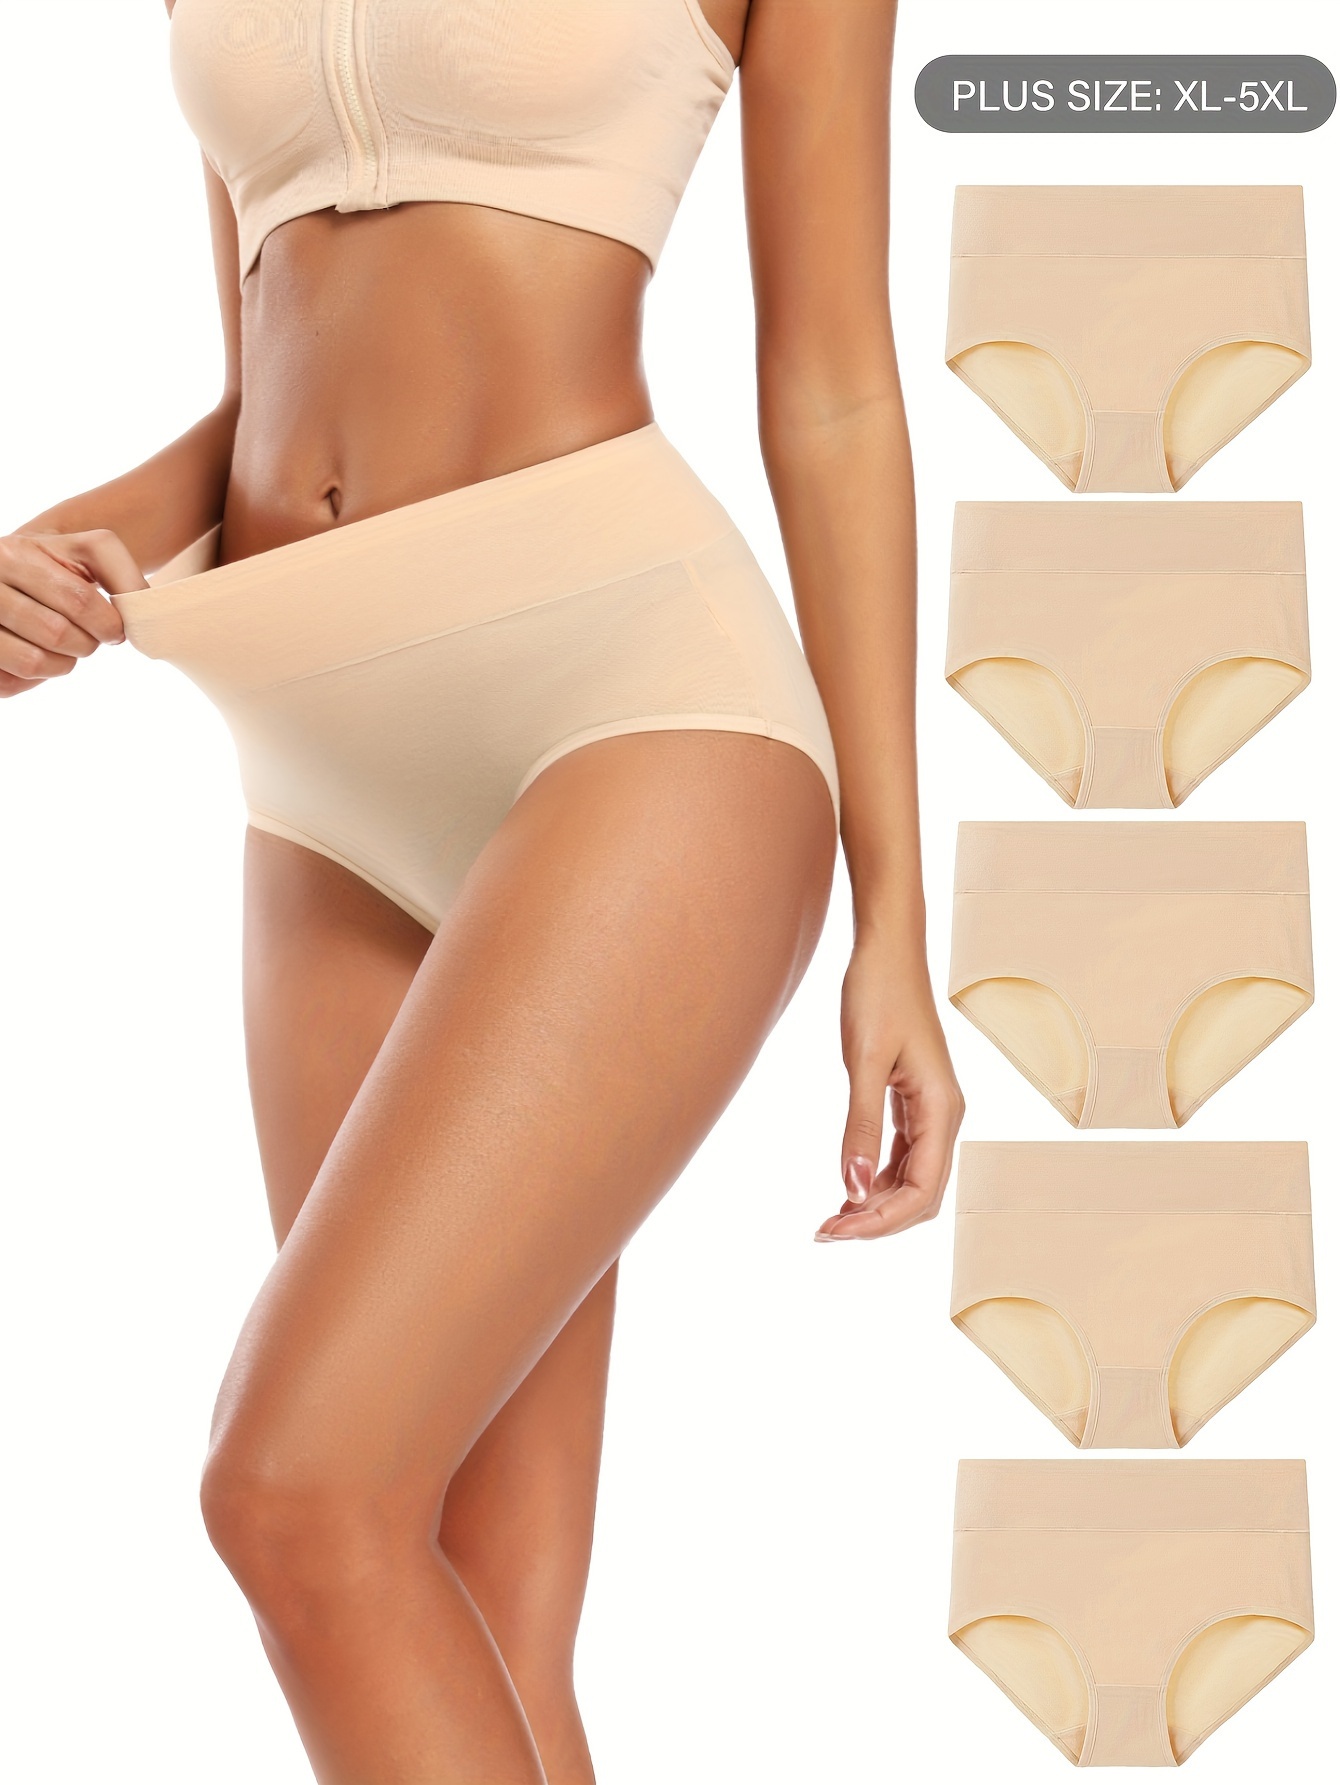 5pcs/set Women's High-waisted Seamless Underwear, Xl-5xl